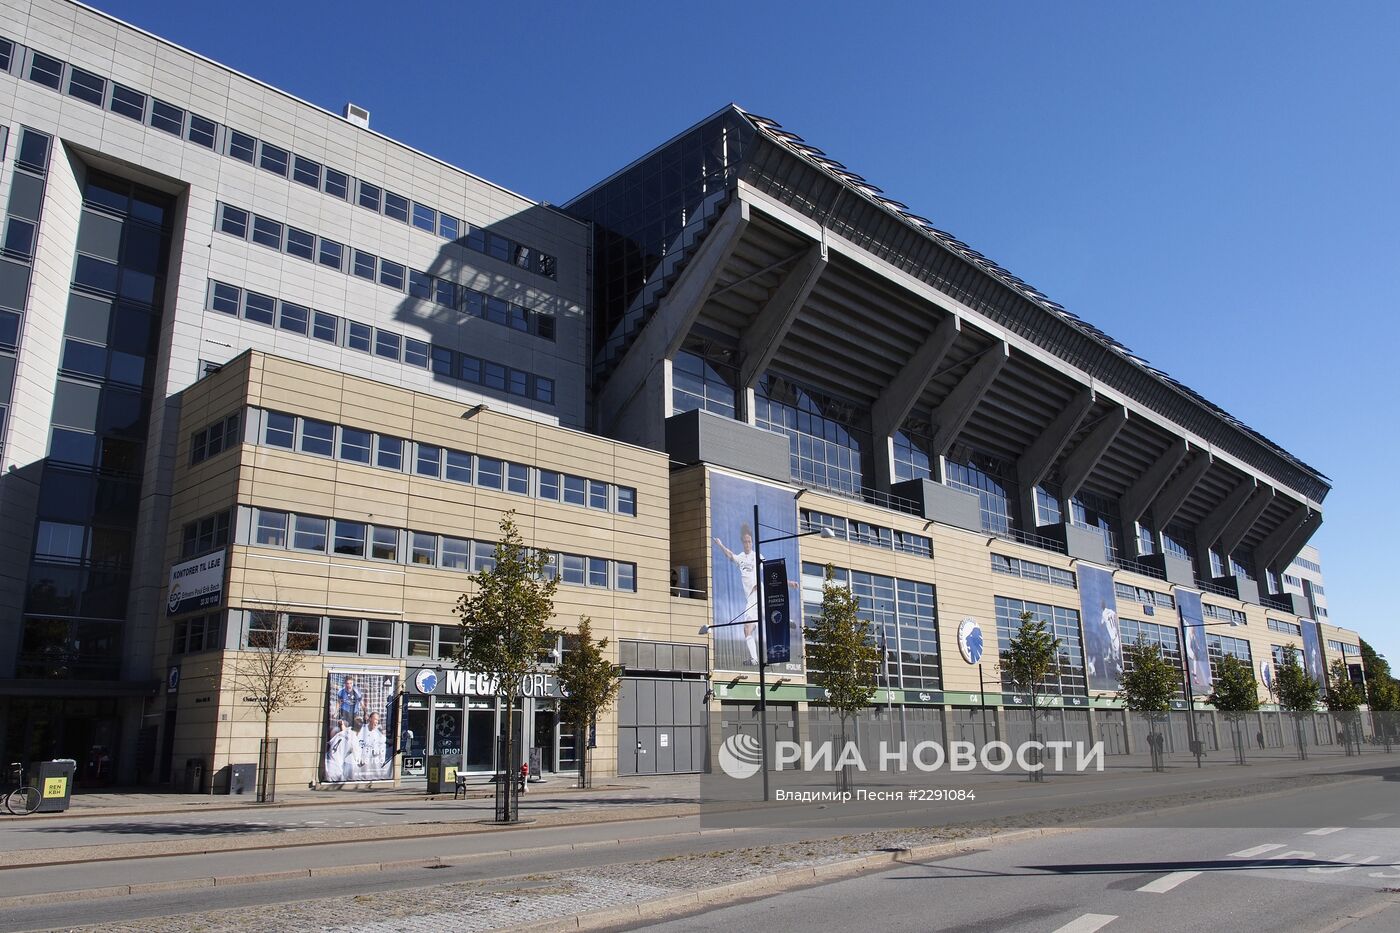 Подготовка футбольного стадиона "Арена Паркен" к финалу чемпионата Европы по волейболу